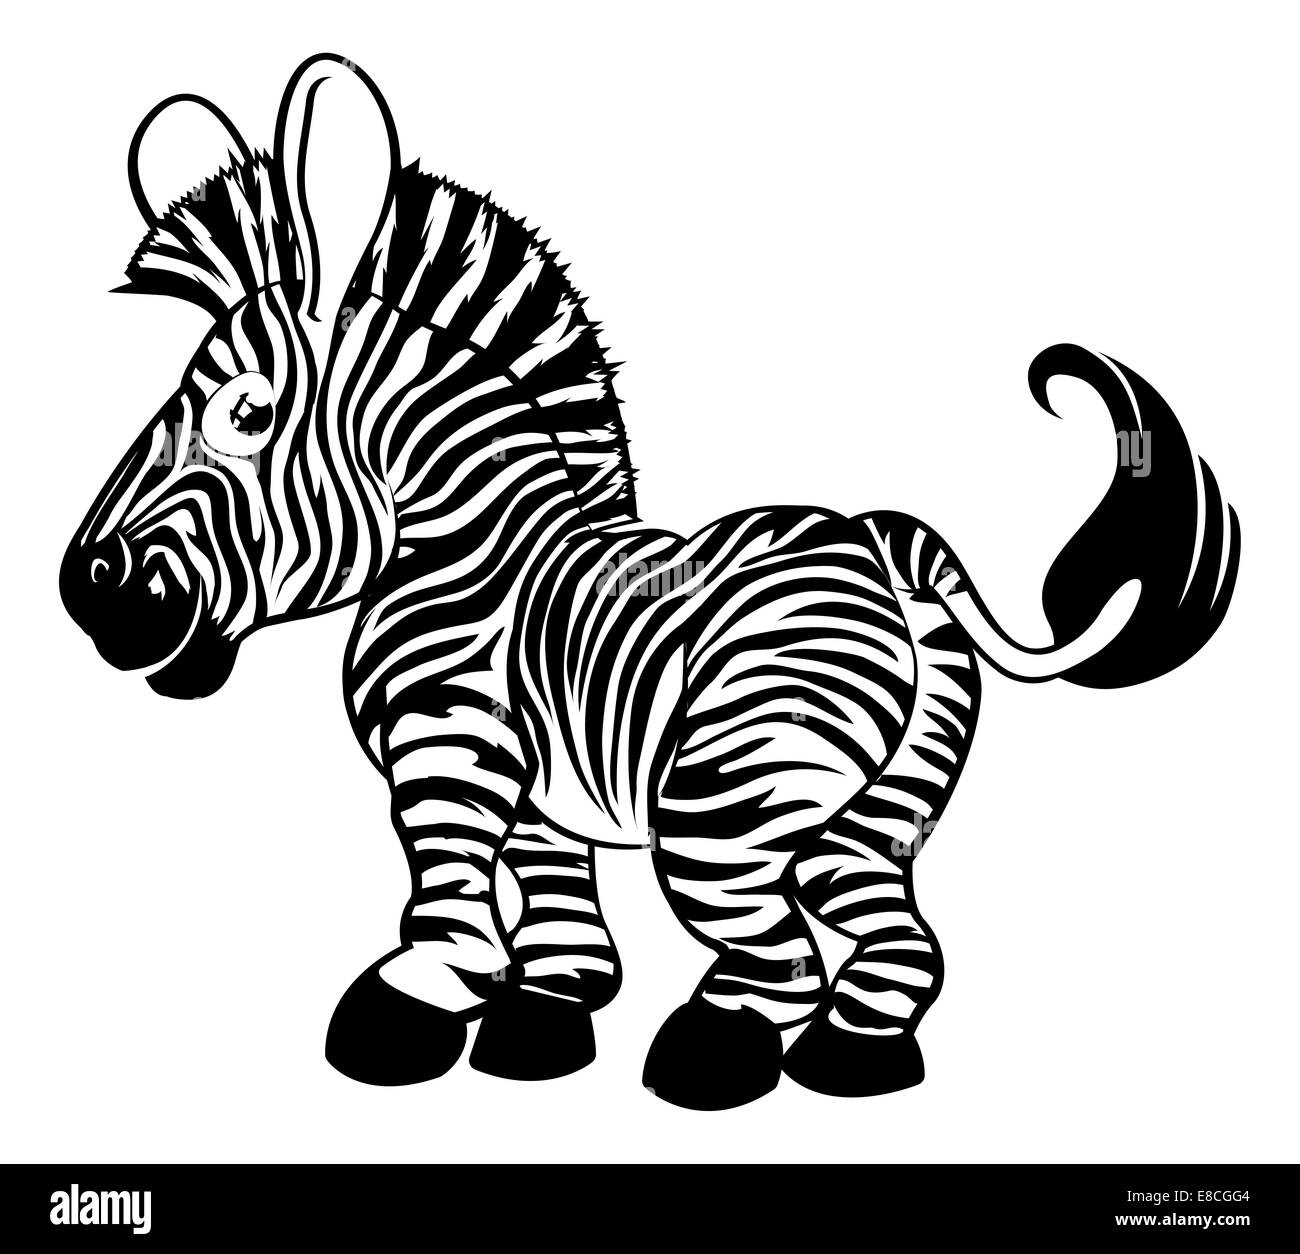 Une illustration d'un noir et blanc zebra cartoon charcter Banque D'Images